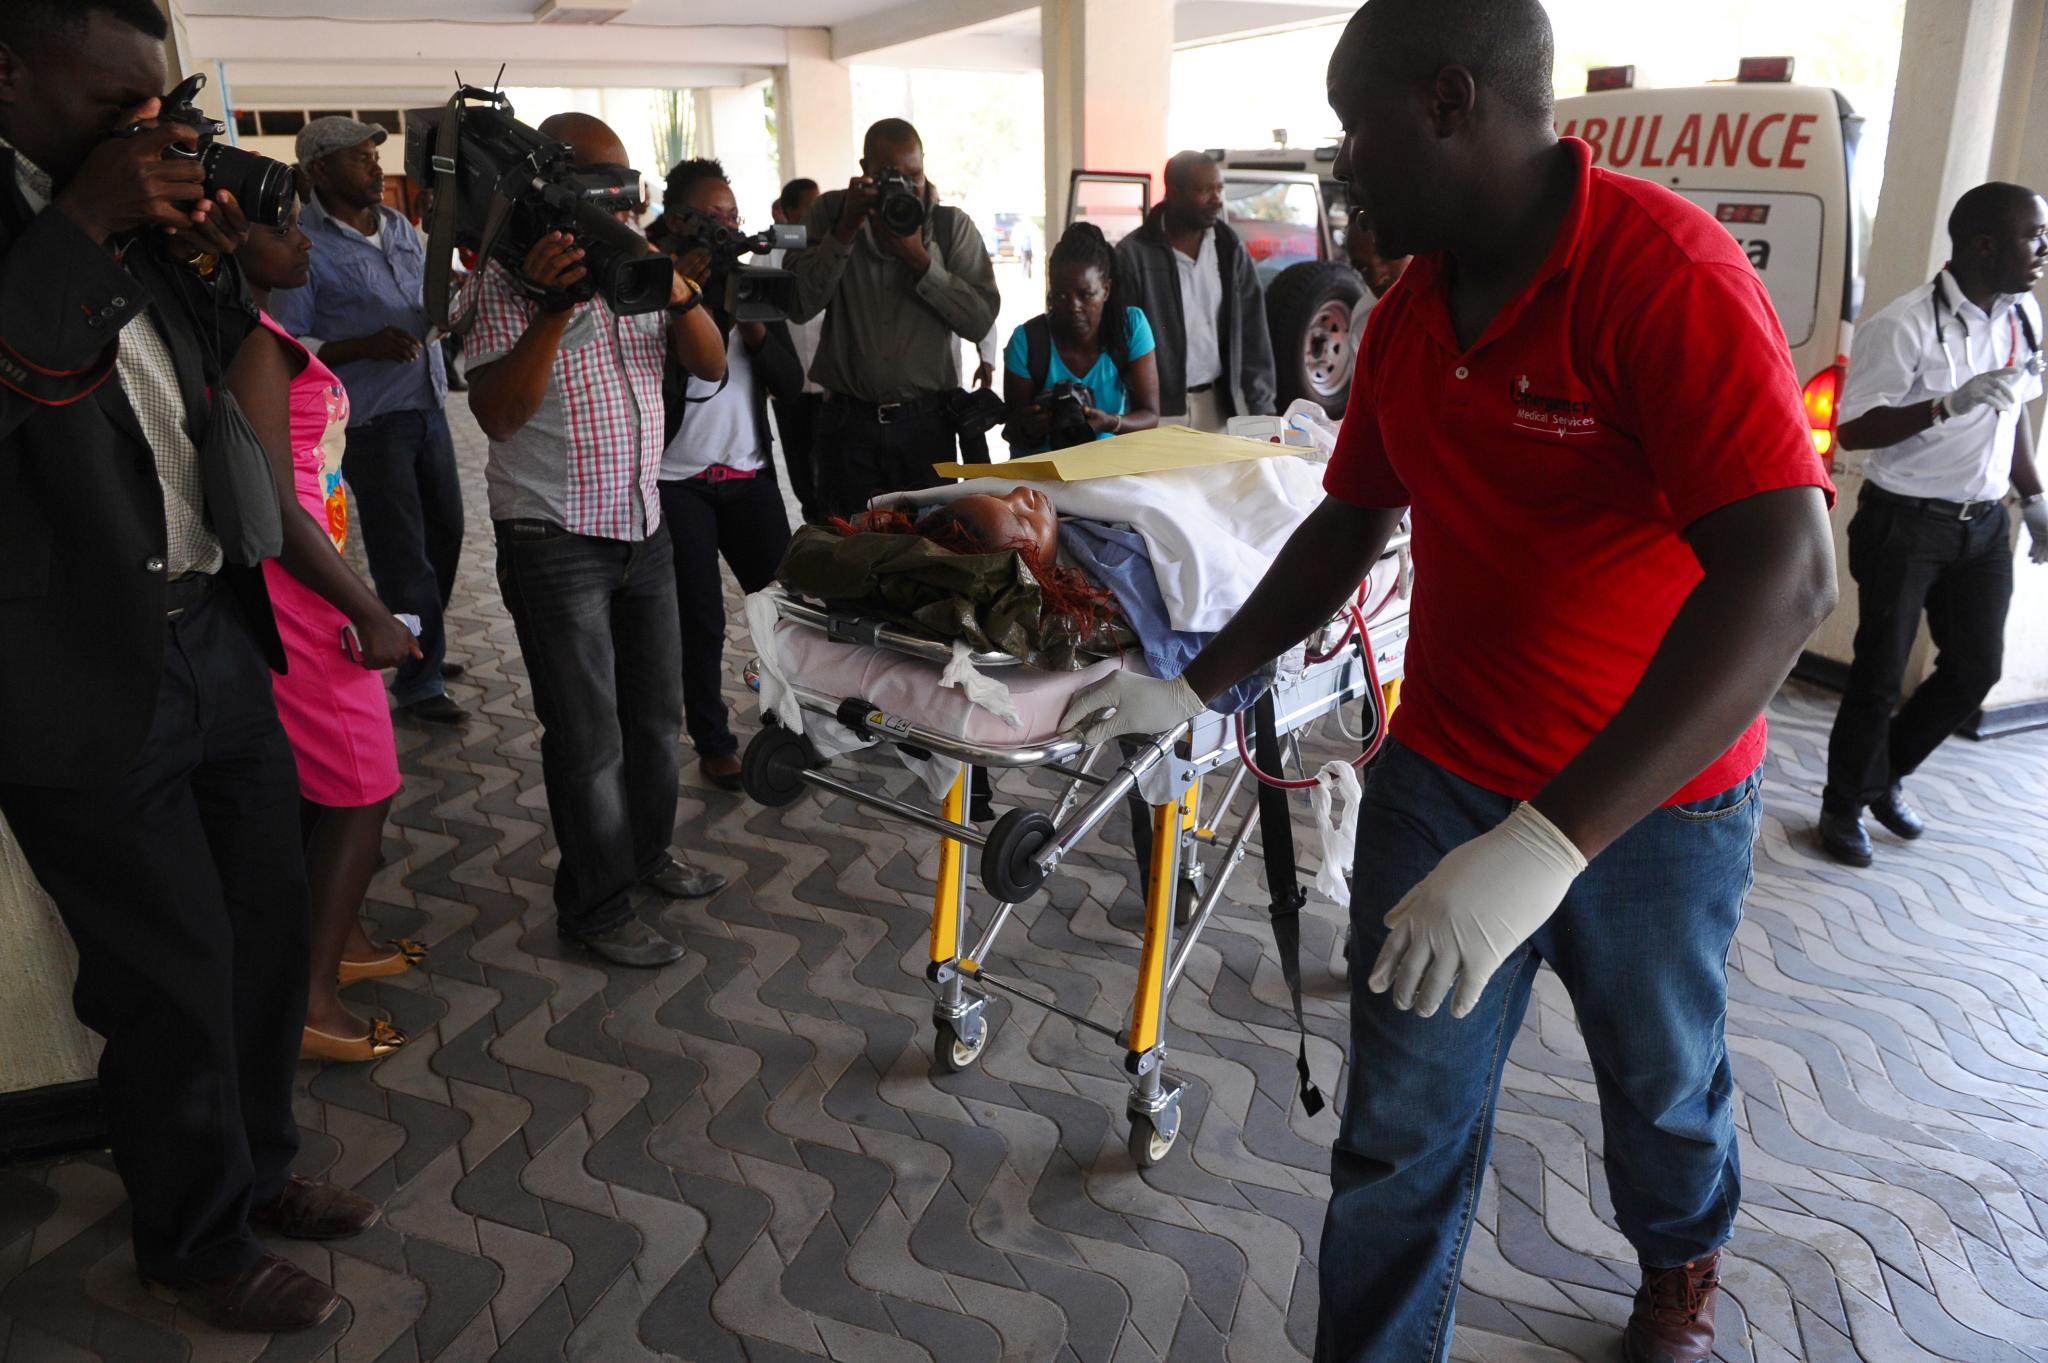 Shabab Militants Massacre 147 Students at Kenyan University